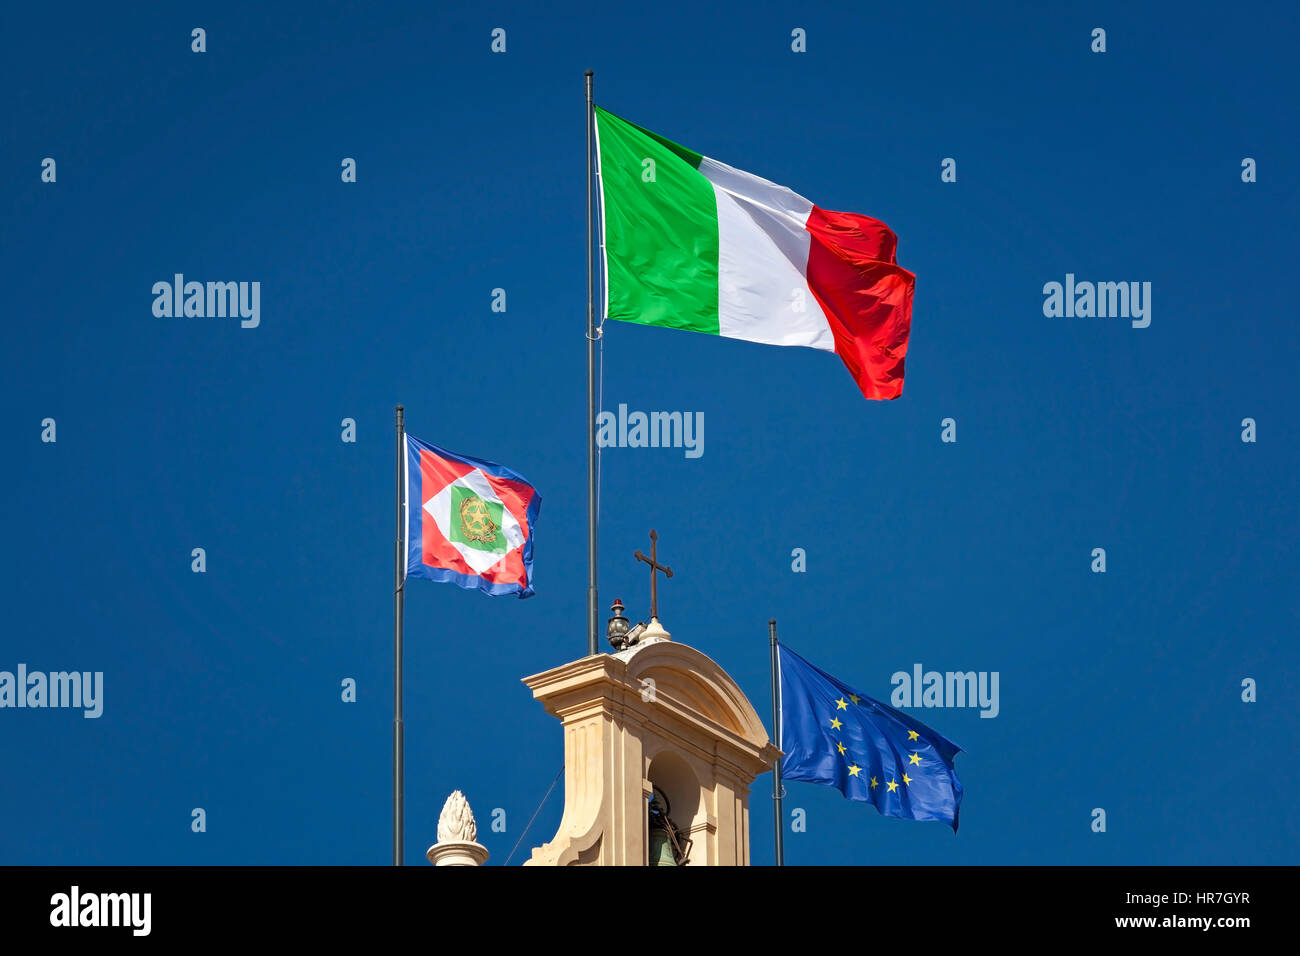 Drapeau Italien affiche sur le clocher de l'Quirinal, avec l'élection présidentielle et le drapeau de l'Union européenne. Je vois des drapeaux italien Banque D'Images